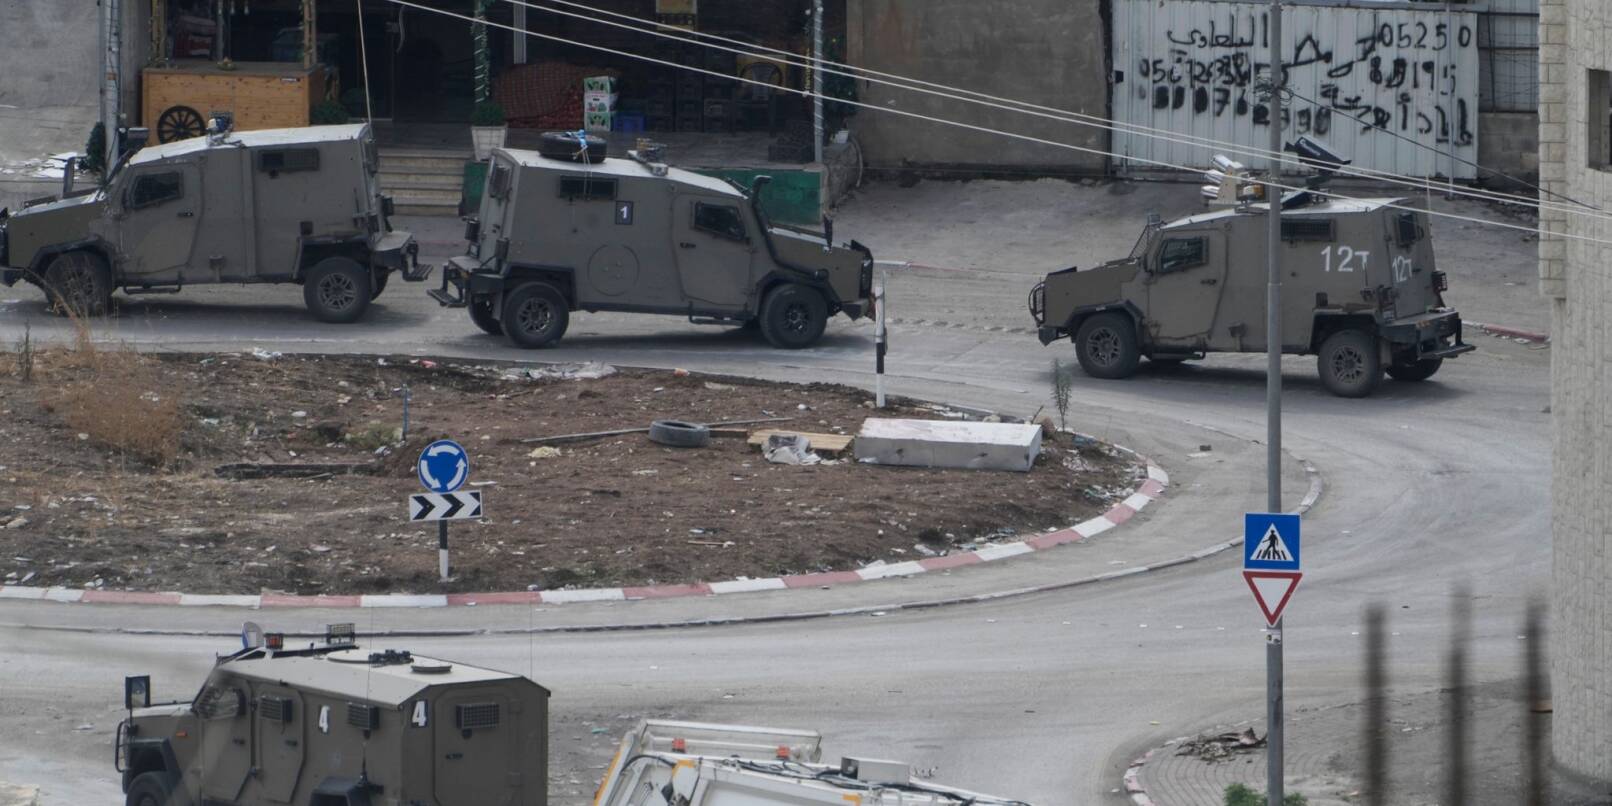 Fahrzeuge des israelischen Militärs in Nur Shams. Hier haben israelische Soldaten eine Razzia durchgeführt.